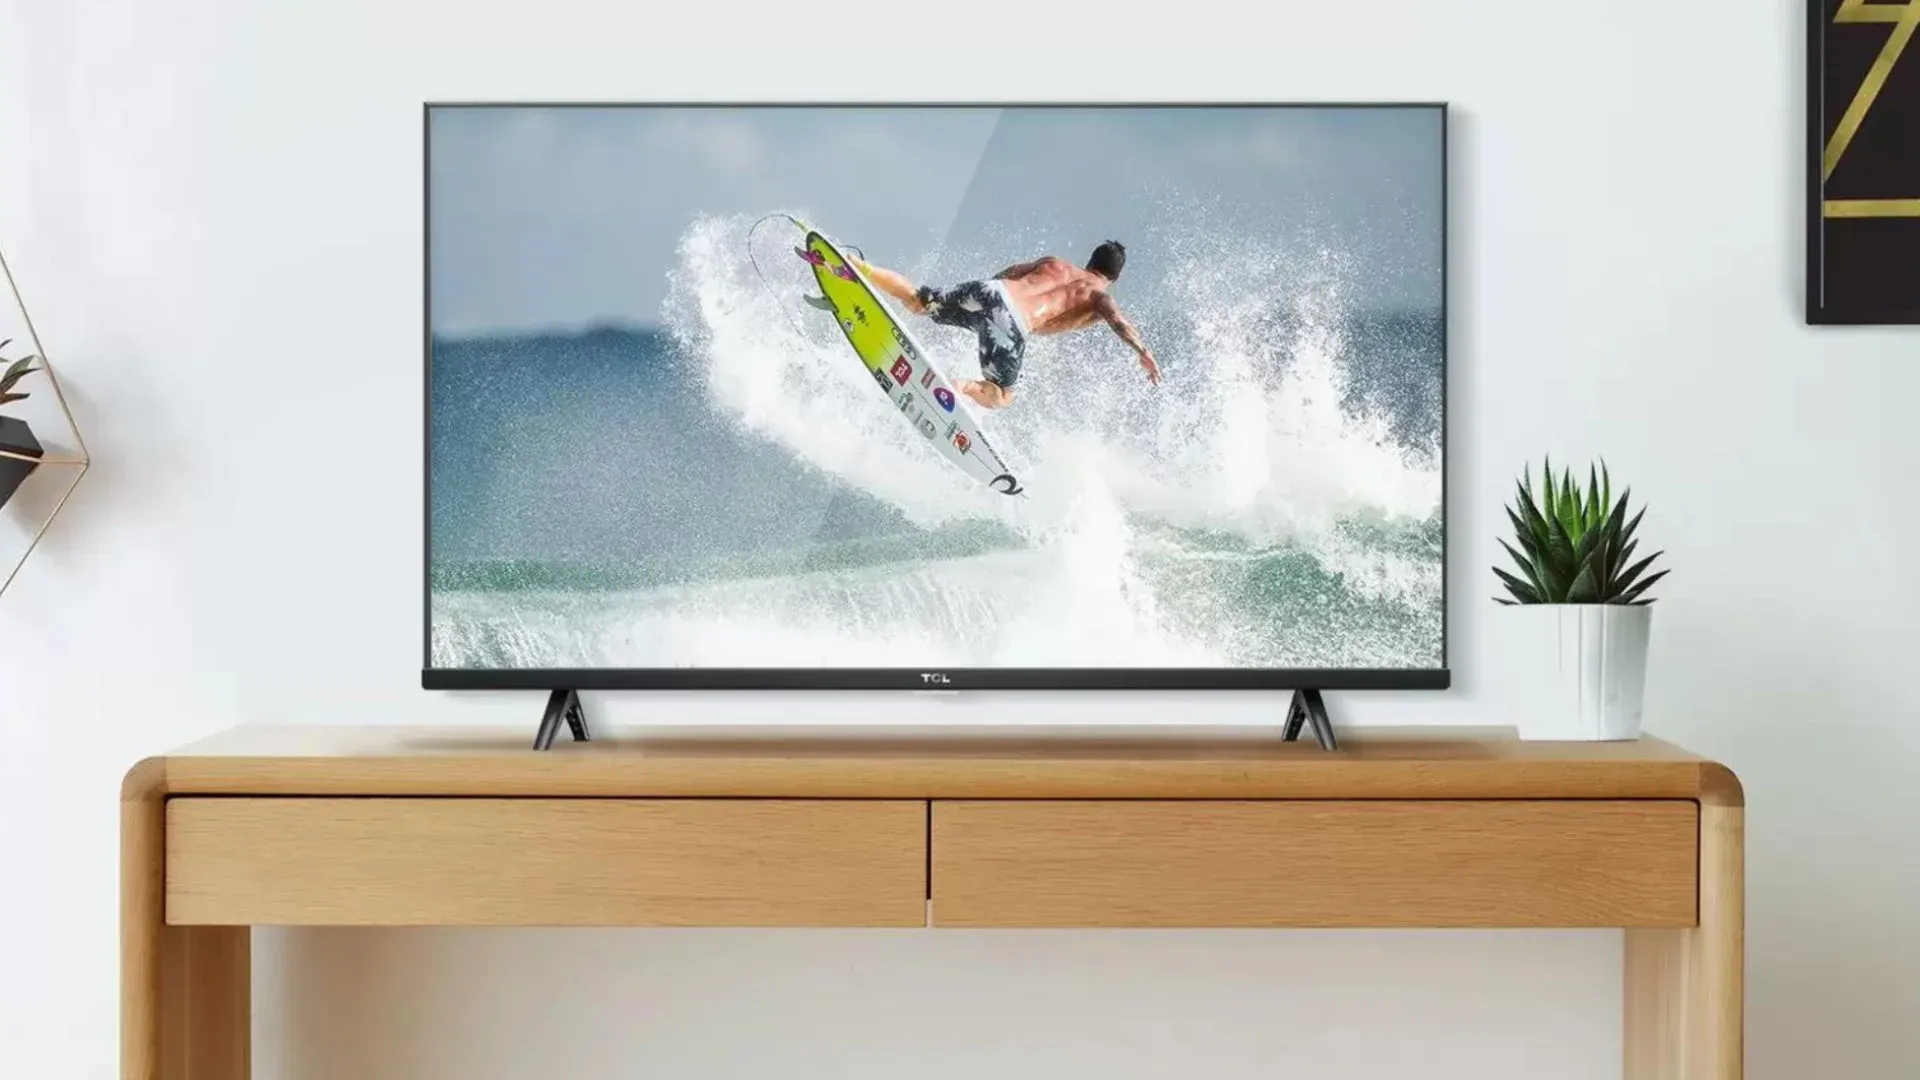 TV TCL S615 sobre aparador em uma sala, reproduzindo surfe